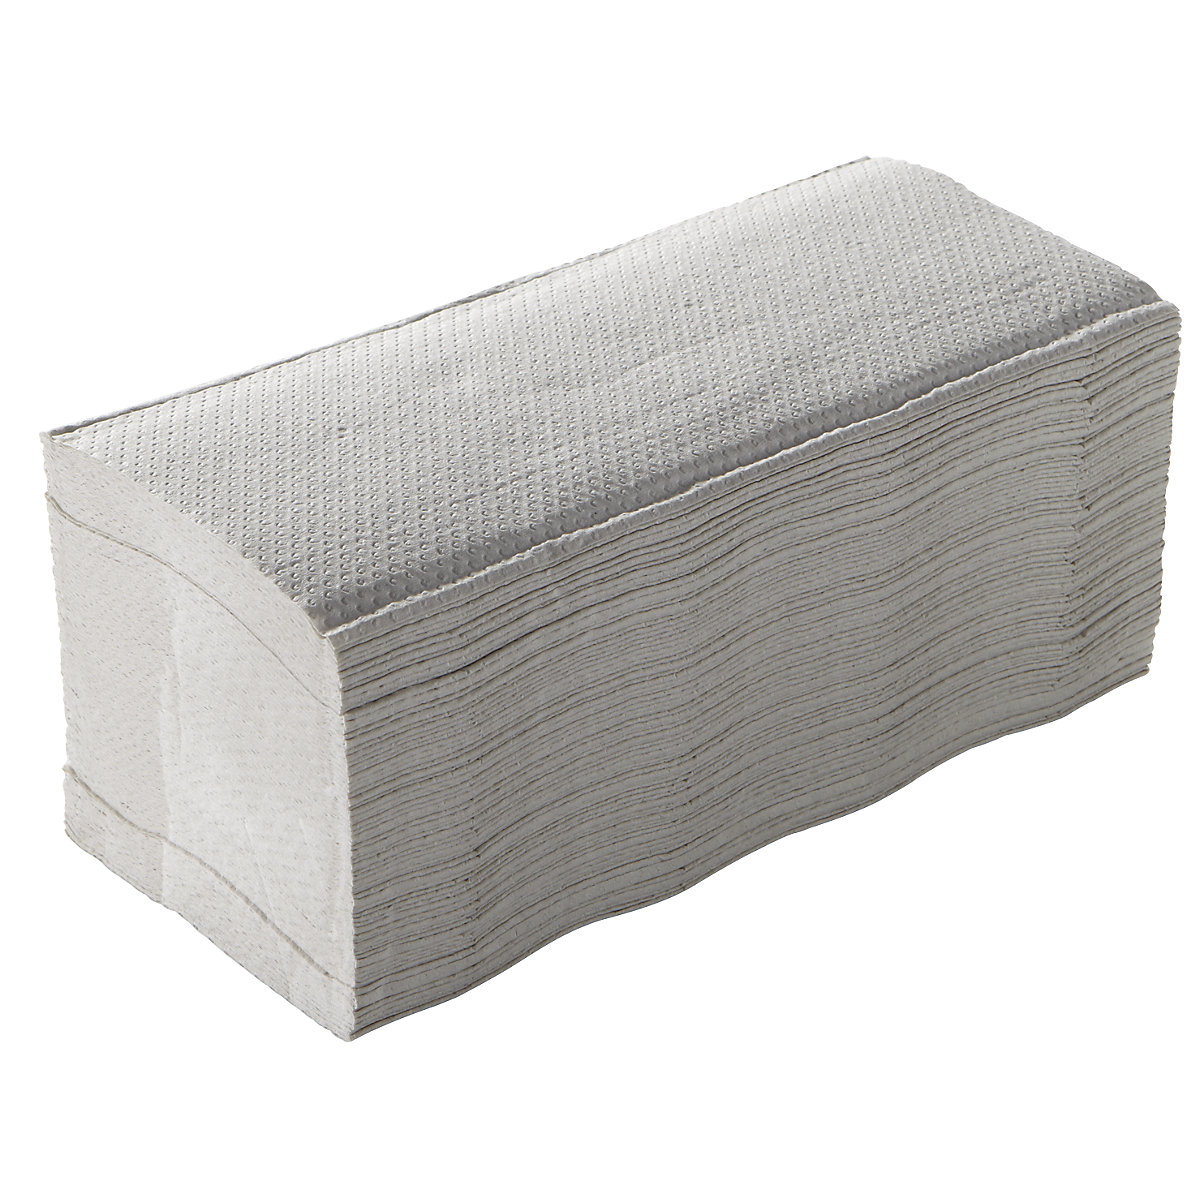 Ręczniki składane z zakładkami typu C – CWS, frottee, bardzo biały, opak. 2880 ręczników, od 4 opak.-5